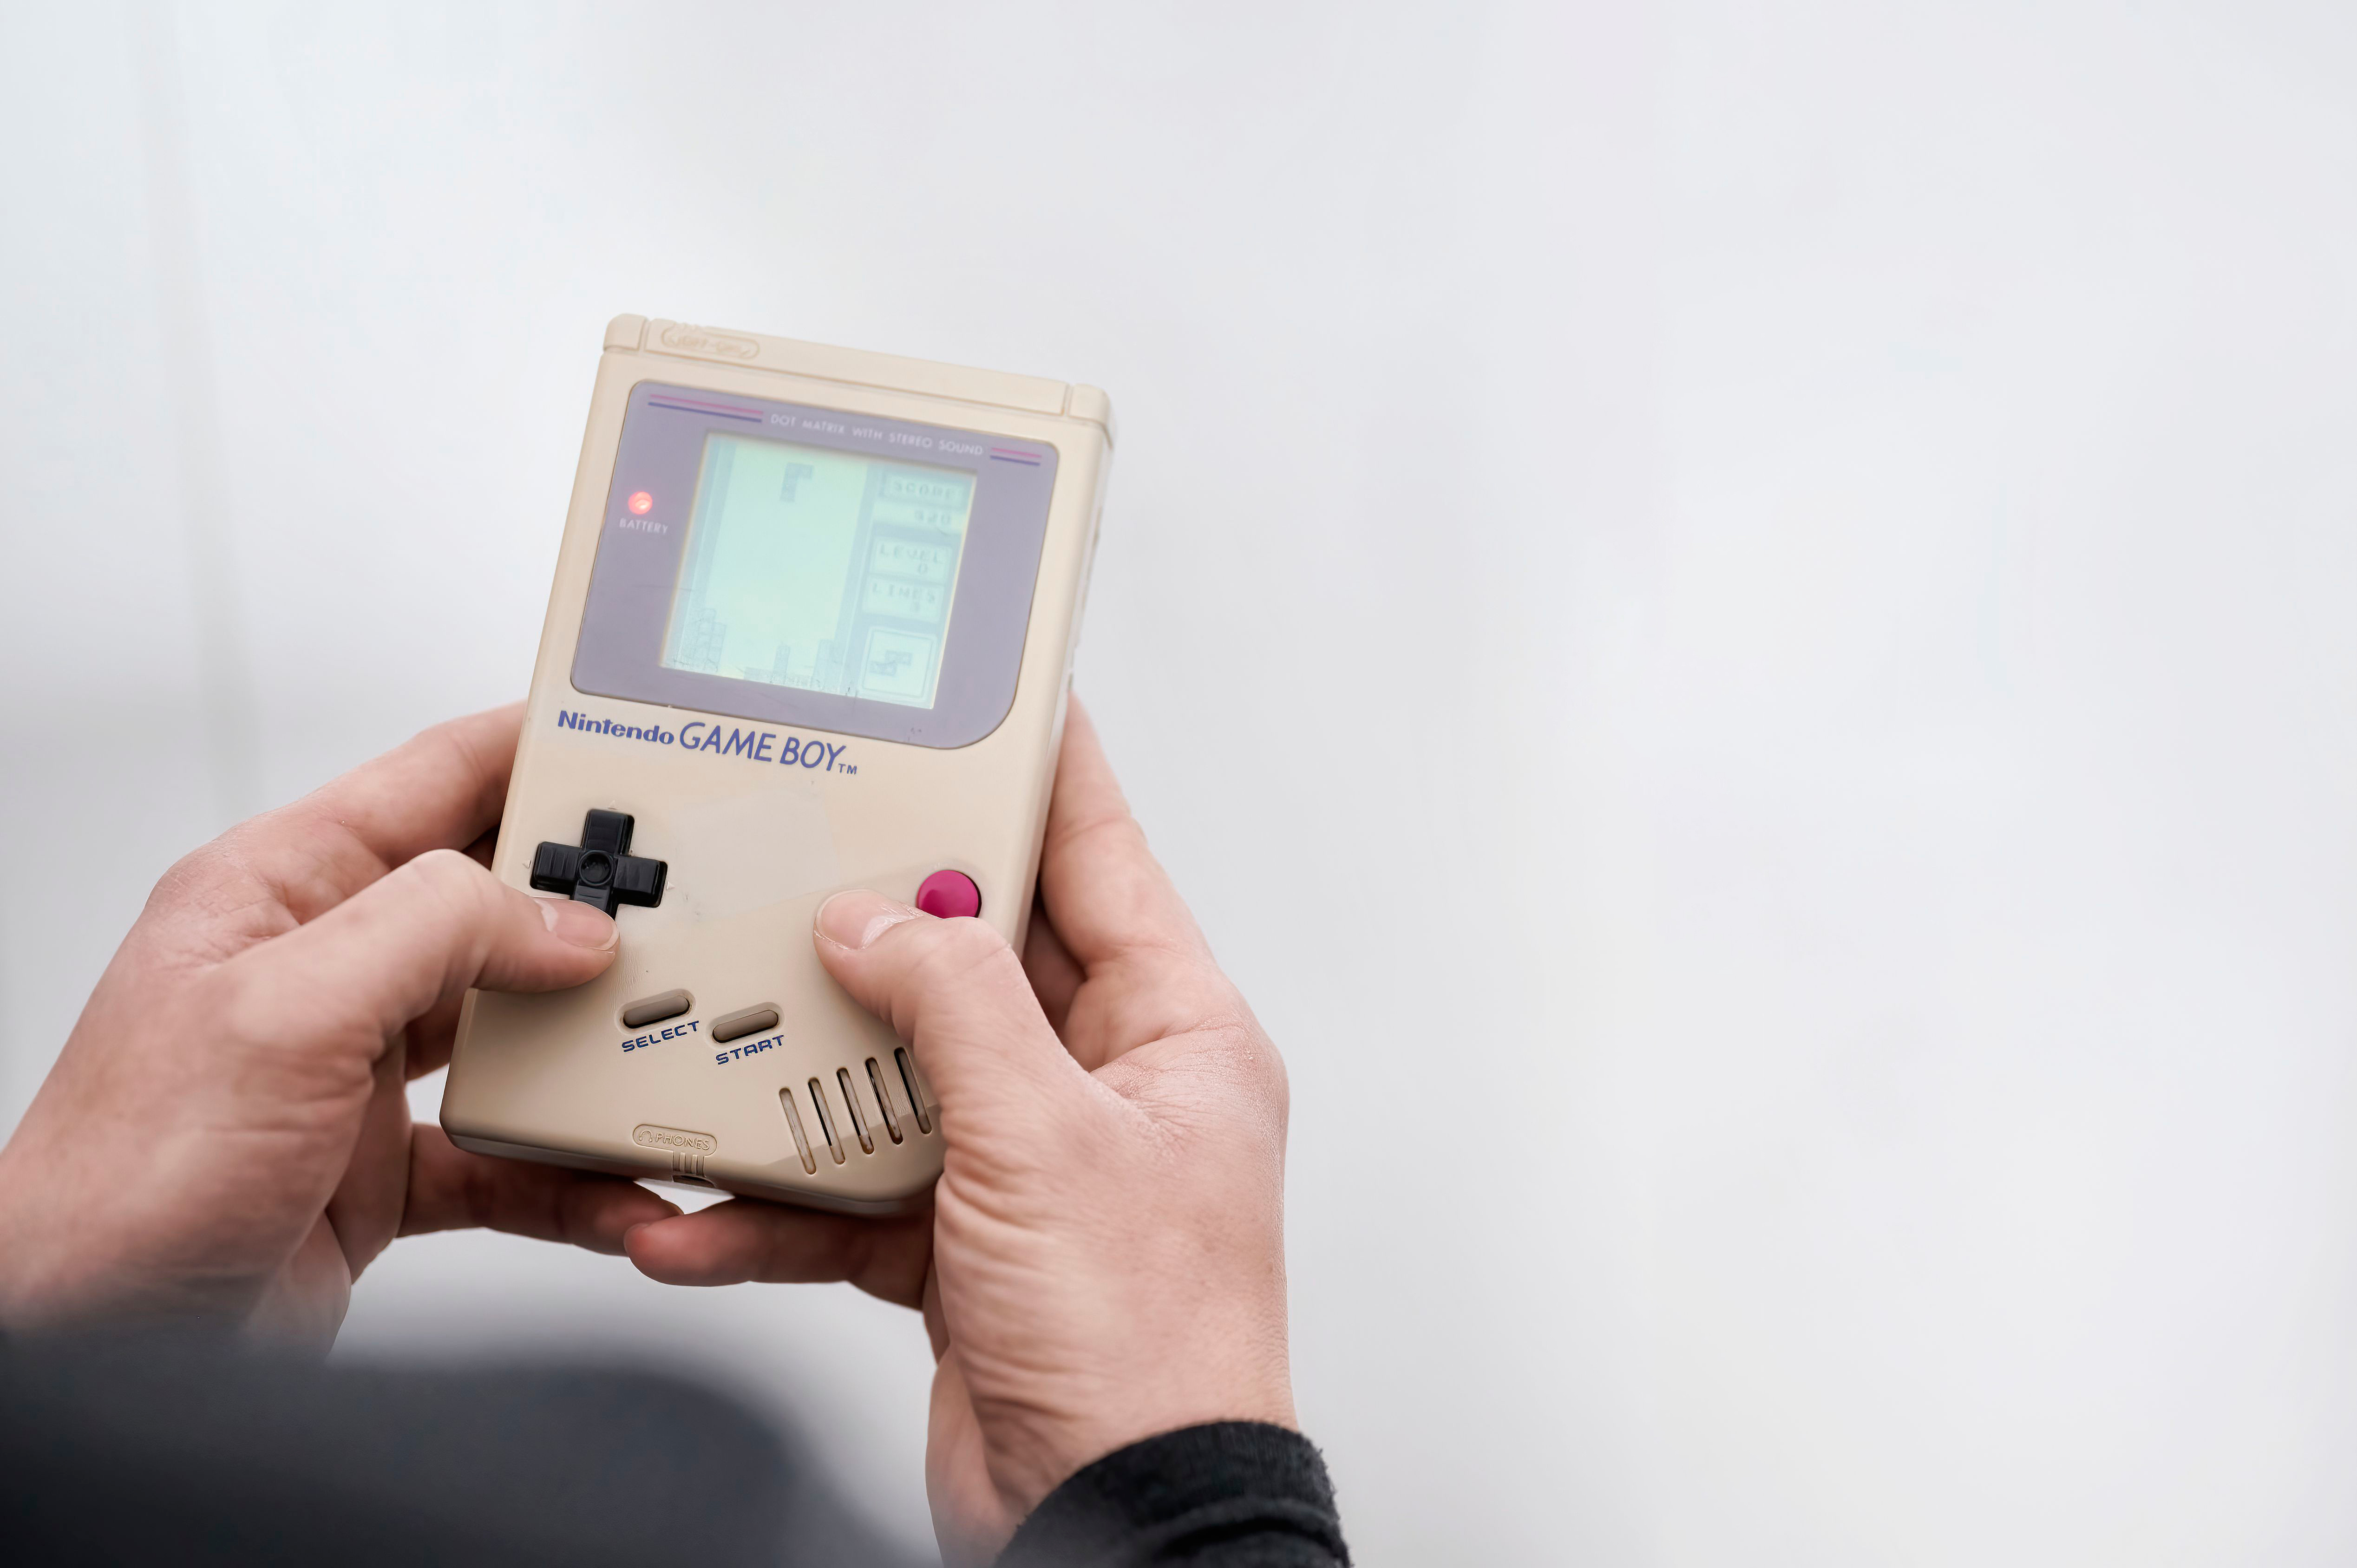 Les jeux Game Boy et Game Boy Advance arrivent sur Nintendo Switch